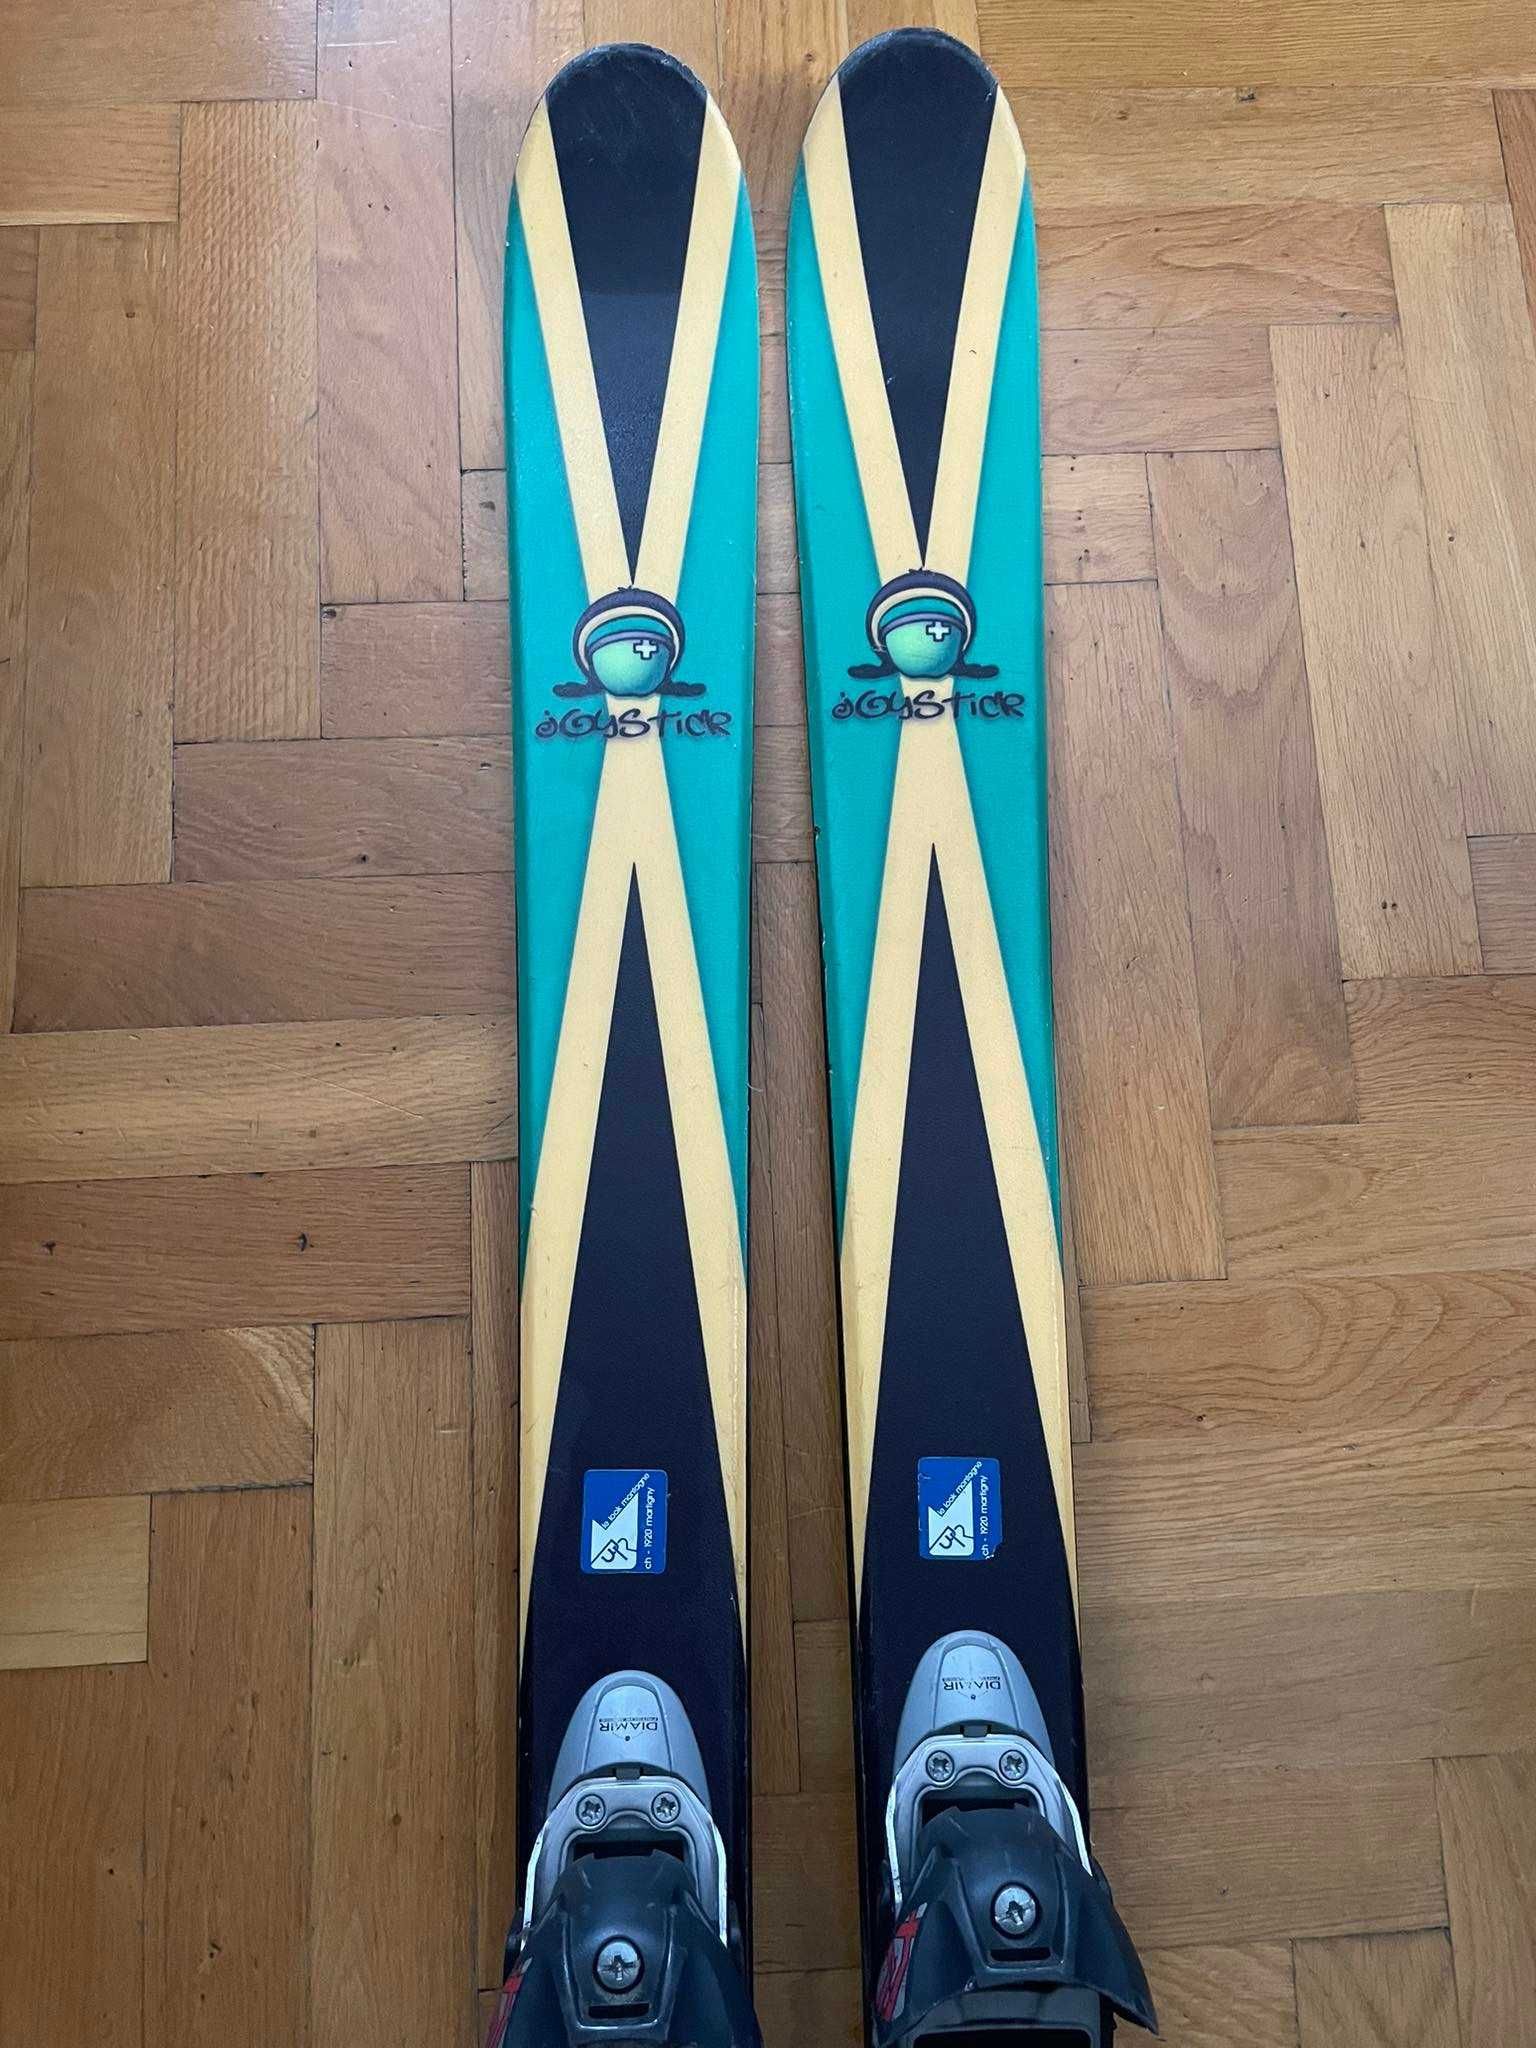 Narty skiturowe do zjazdu freeride, długość nart to 176 cm